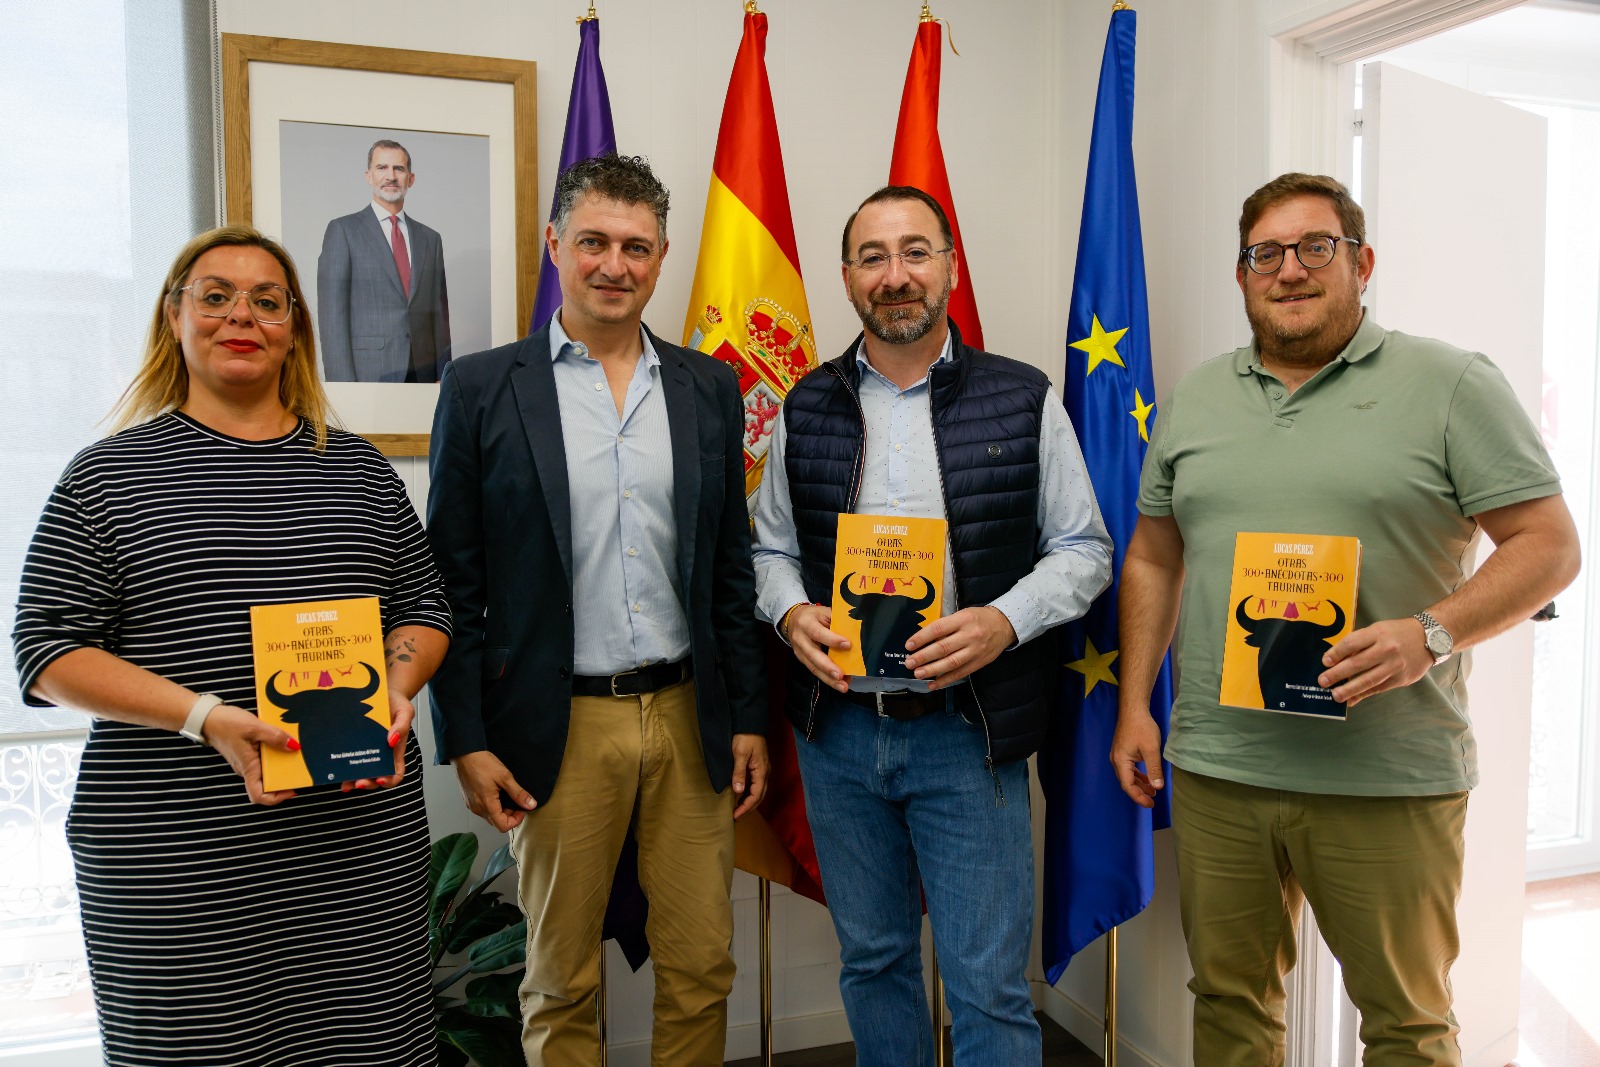 El alcalde recibe al escritor colmenareño Lucas Pérez por su nuevo libro ‘Otras 300 anécdotas taurinas’ colmenar viejo